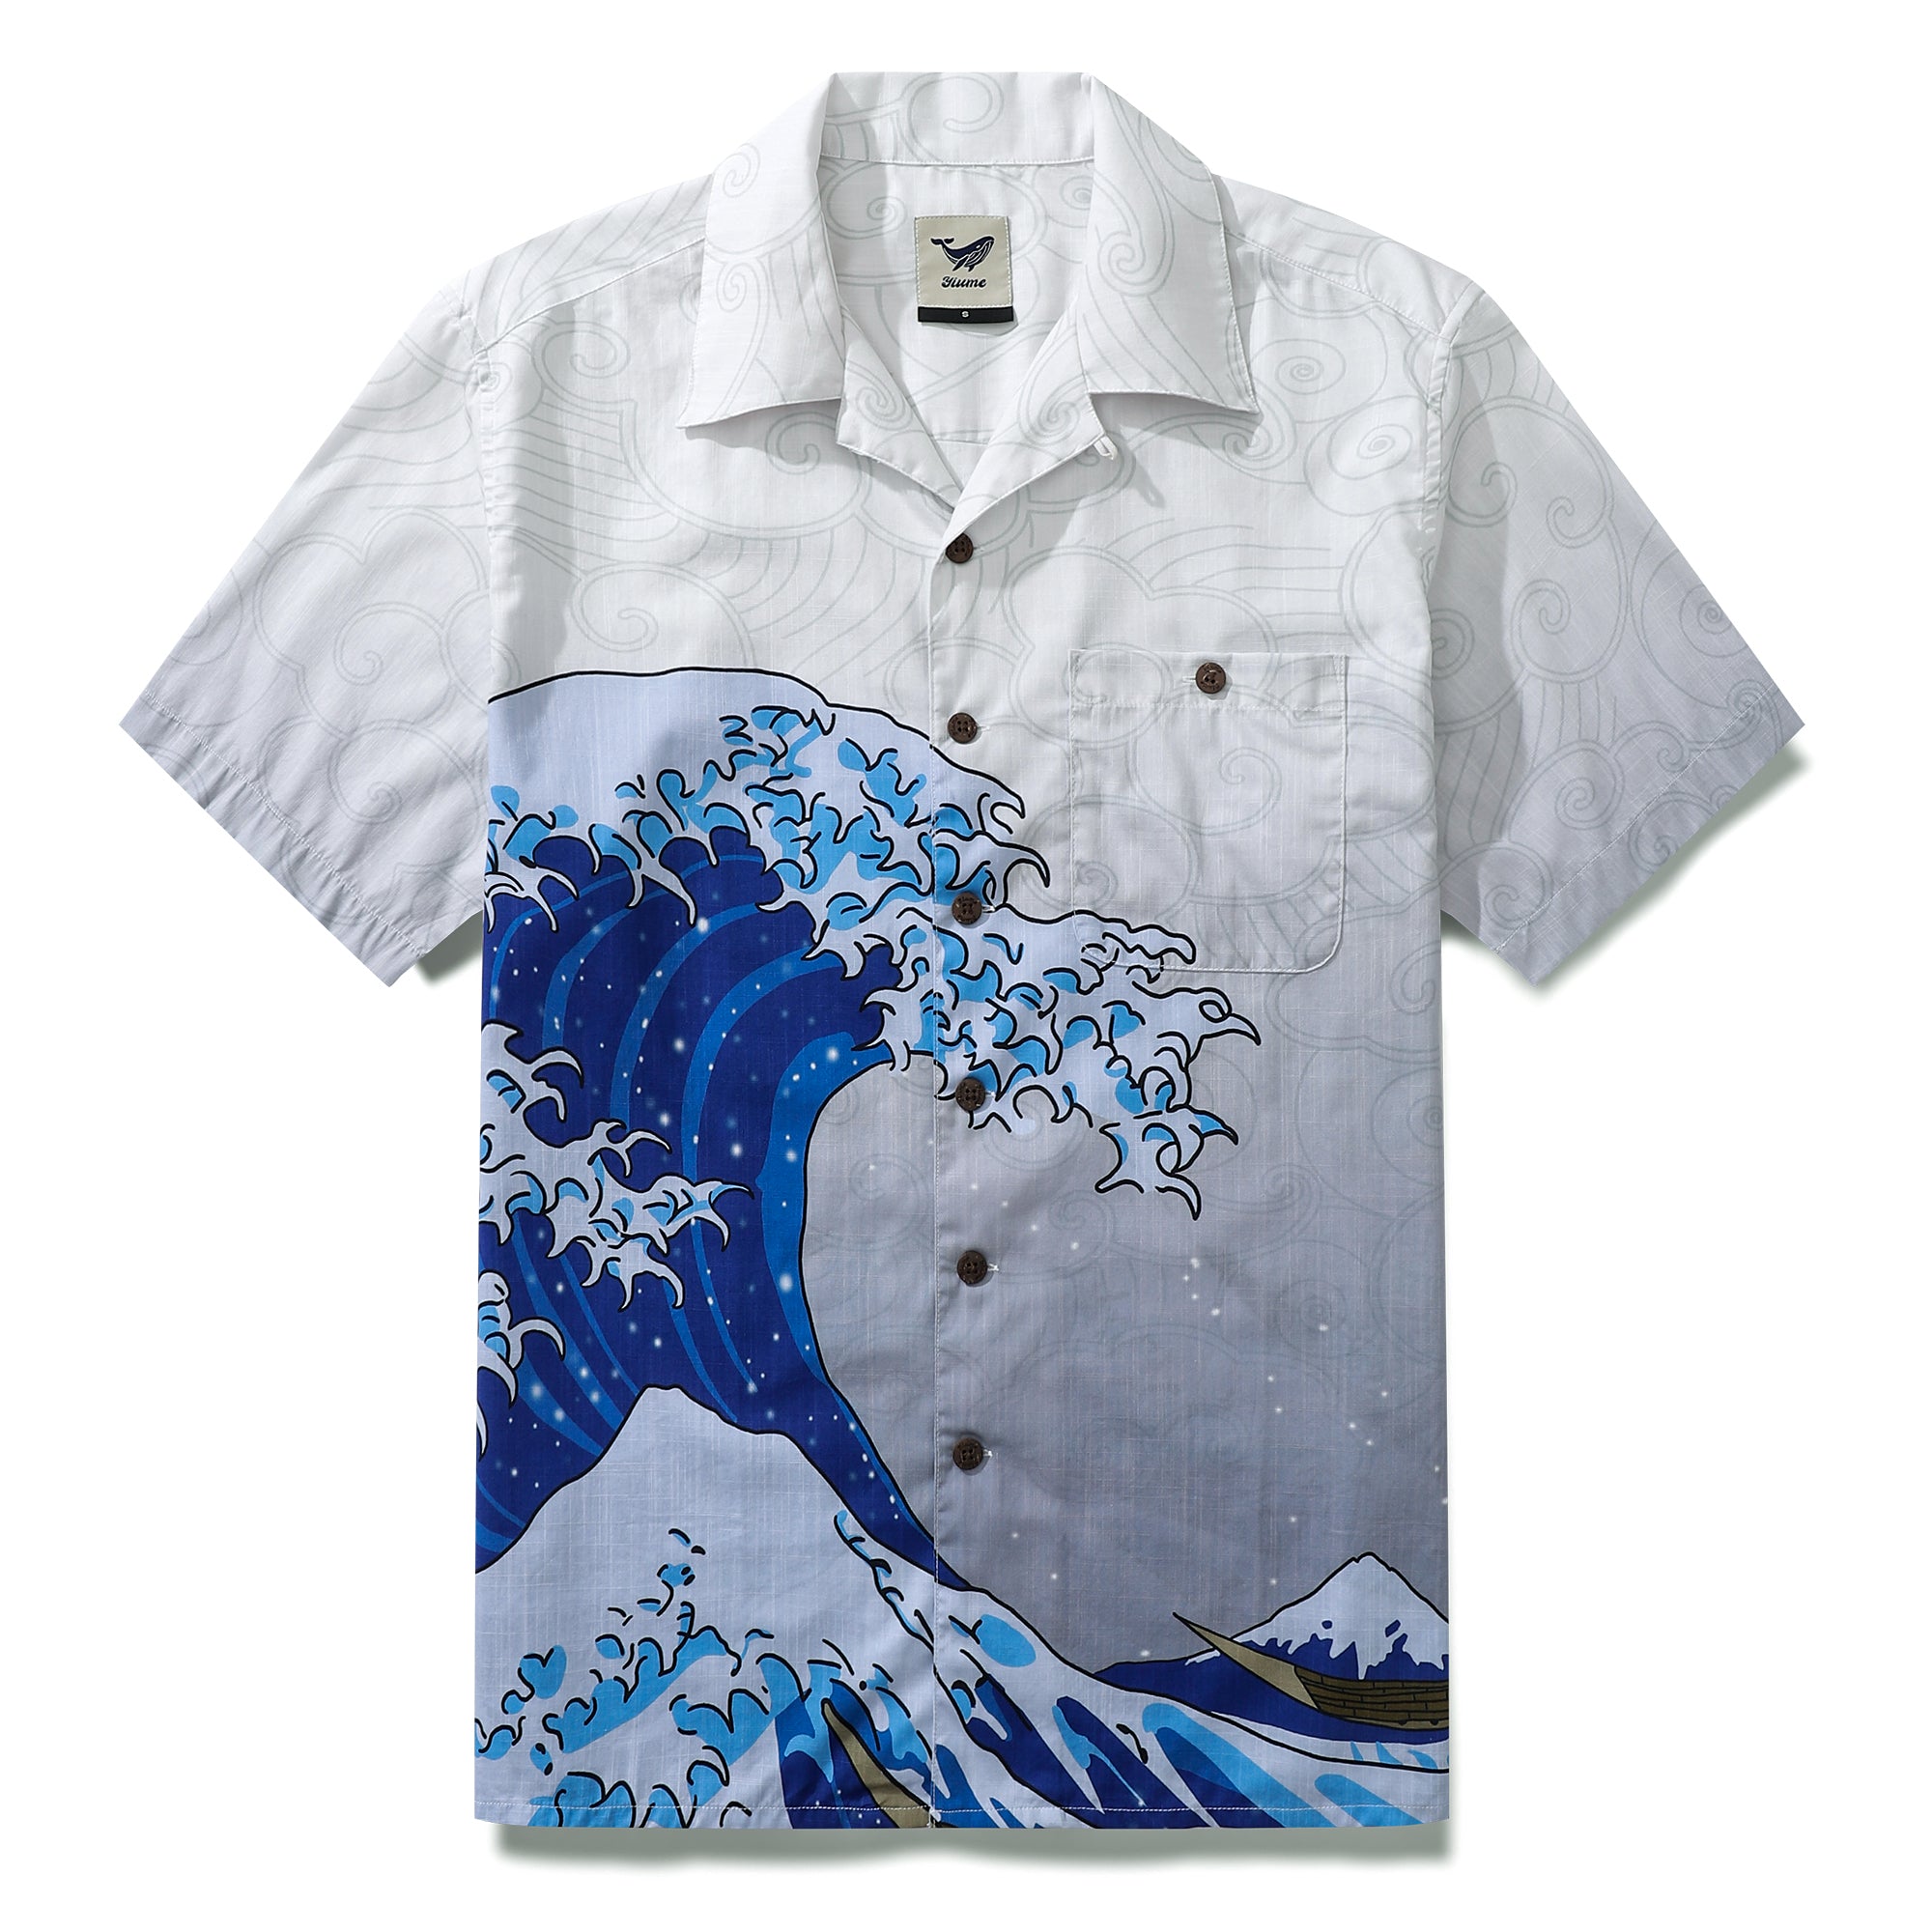 メンズ アロハシャツ コットン 半袖 波柄 ココナッツボタン キャンプシャツ